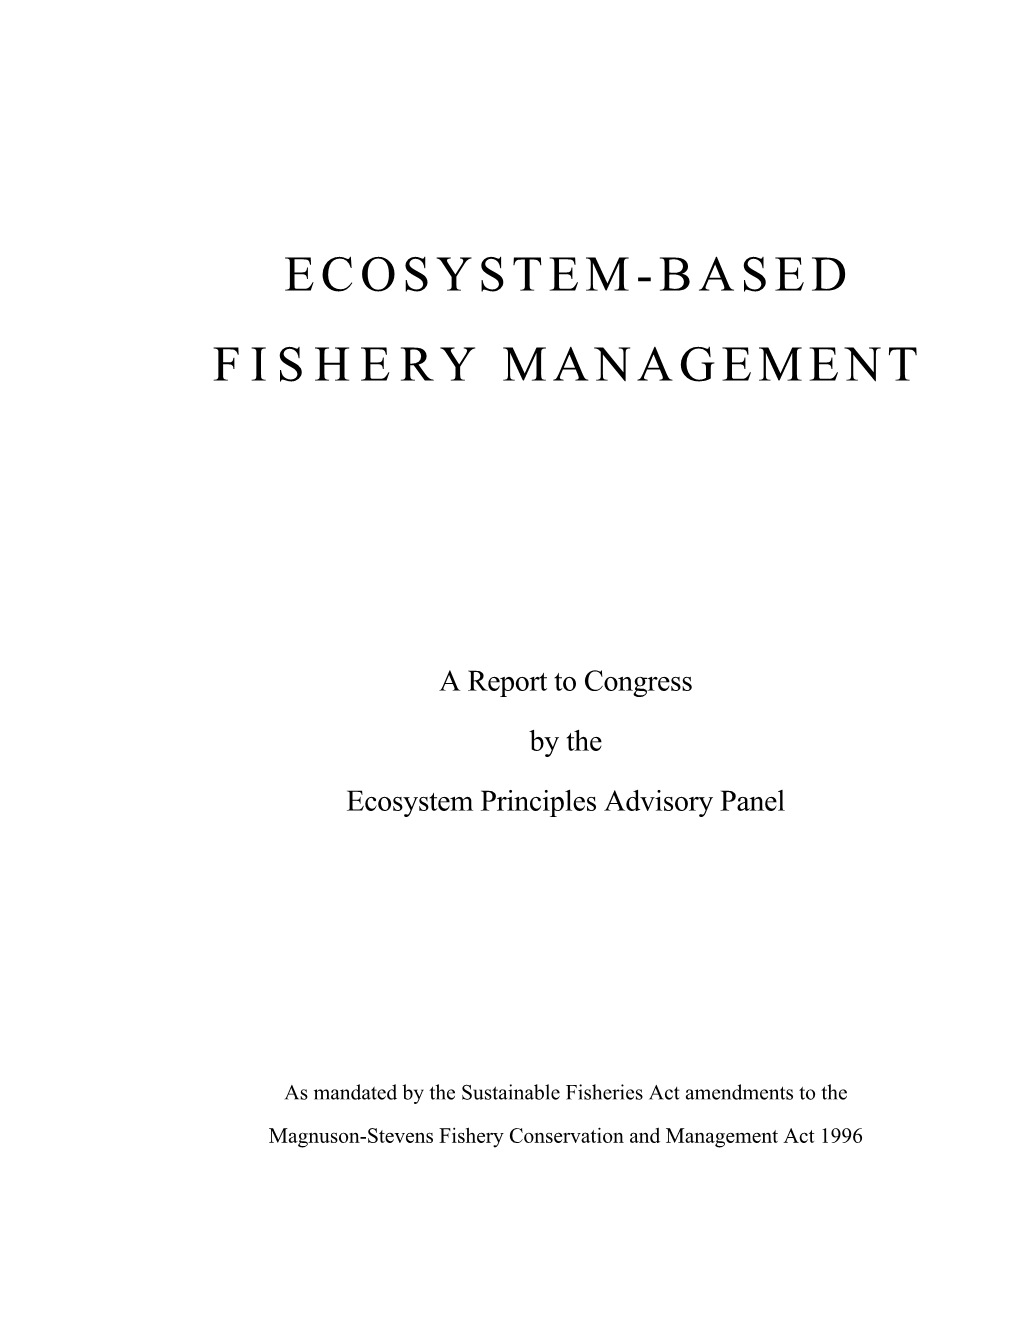 Ecosystem -Based Fishery Management